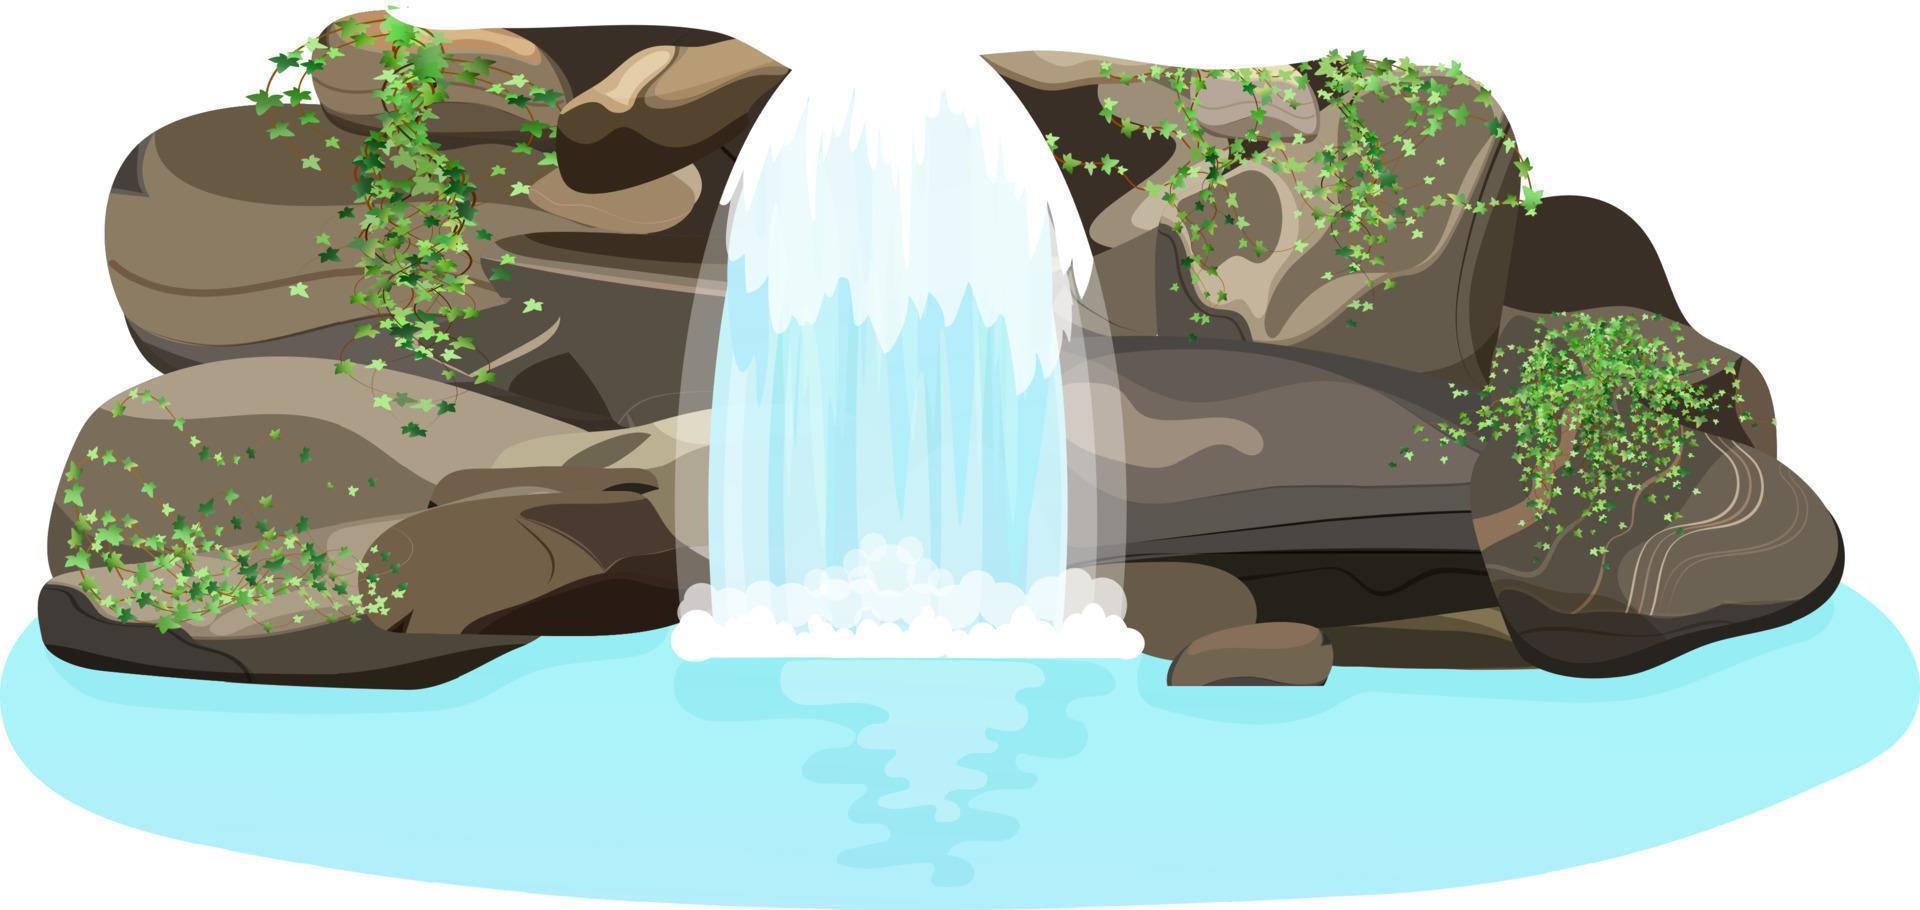 conjunto de paisajes tropicales naturales con una cascada que fluye entre rocas y piedras. una corriente de agua desemboca en un lago azul cubierto de arbustos y árboles silvestres. vector